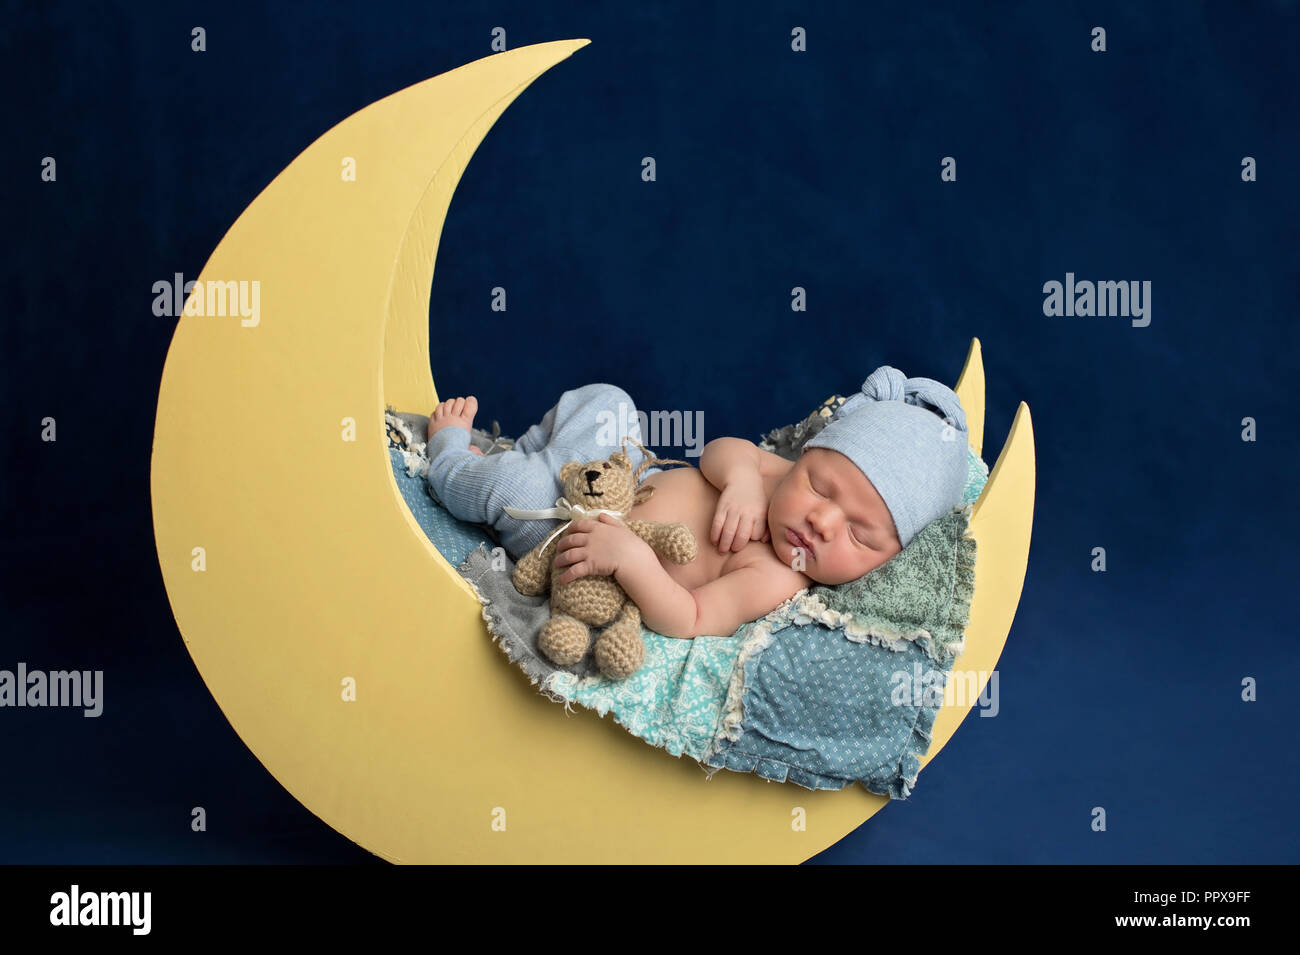 Studio portrait d'un nouveau-né âgé de dix jours en portant des bas de pyjama bébé garçon et un coin couchage. Il est en train de dormir sur une lune posing and holding a prop Banque D'Images